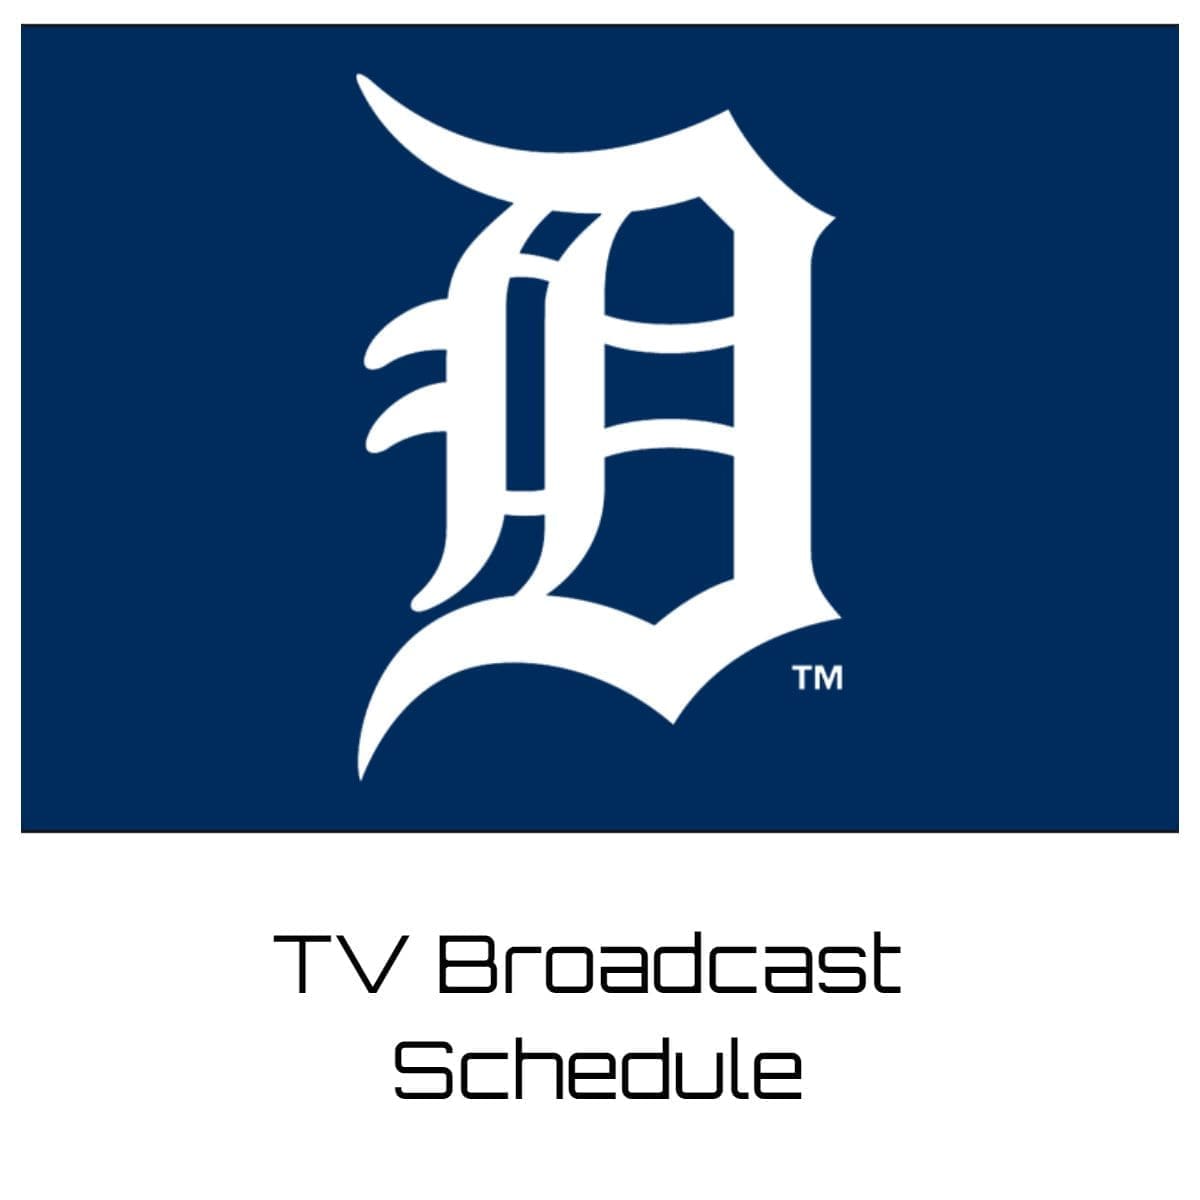 Detroit Tigers TV Broadcast Schedule